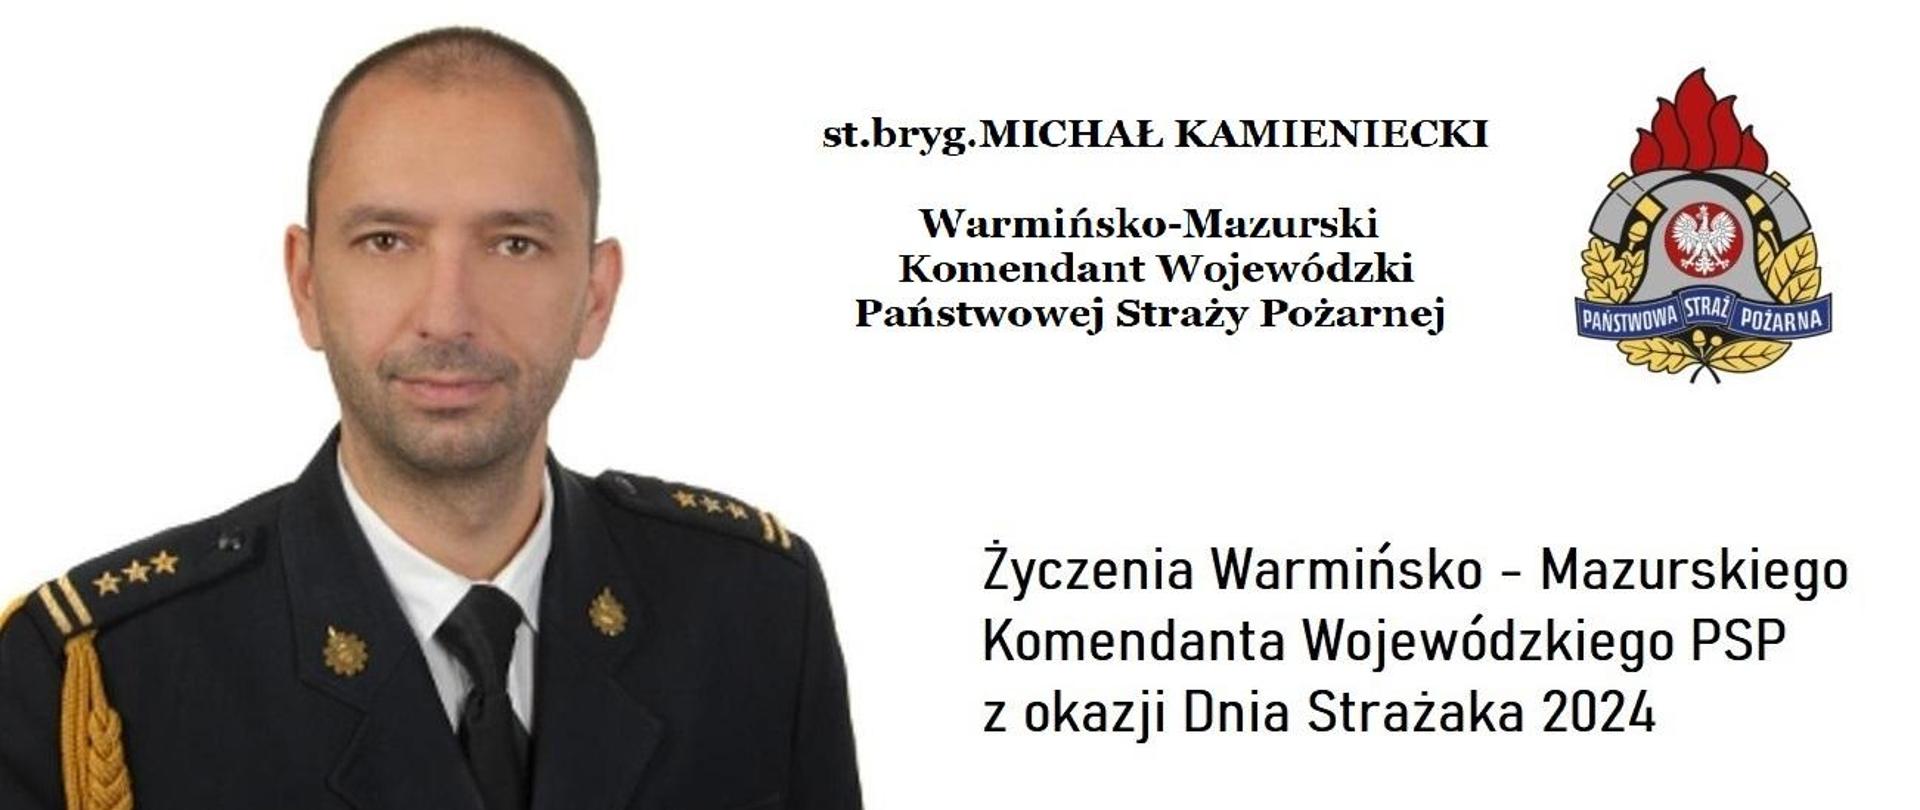 st.bryg. Michał Kamieniecki Warmińsko-Mazurski Komendant Wojewódzki PSP